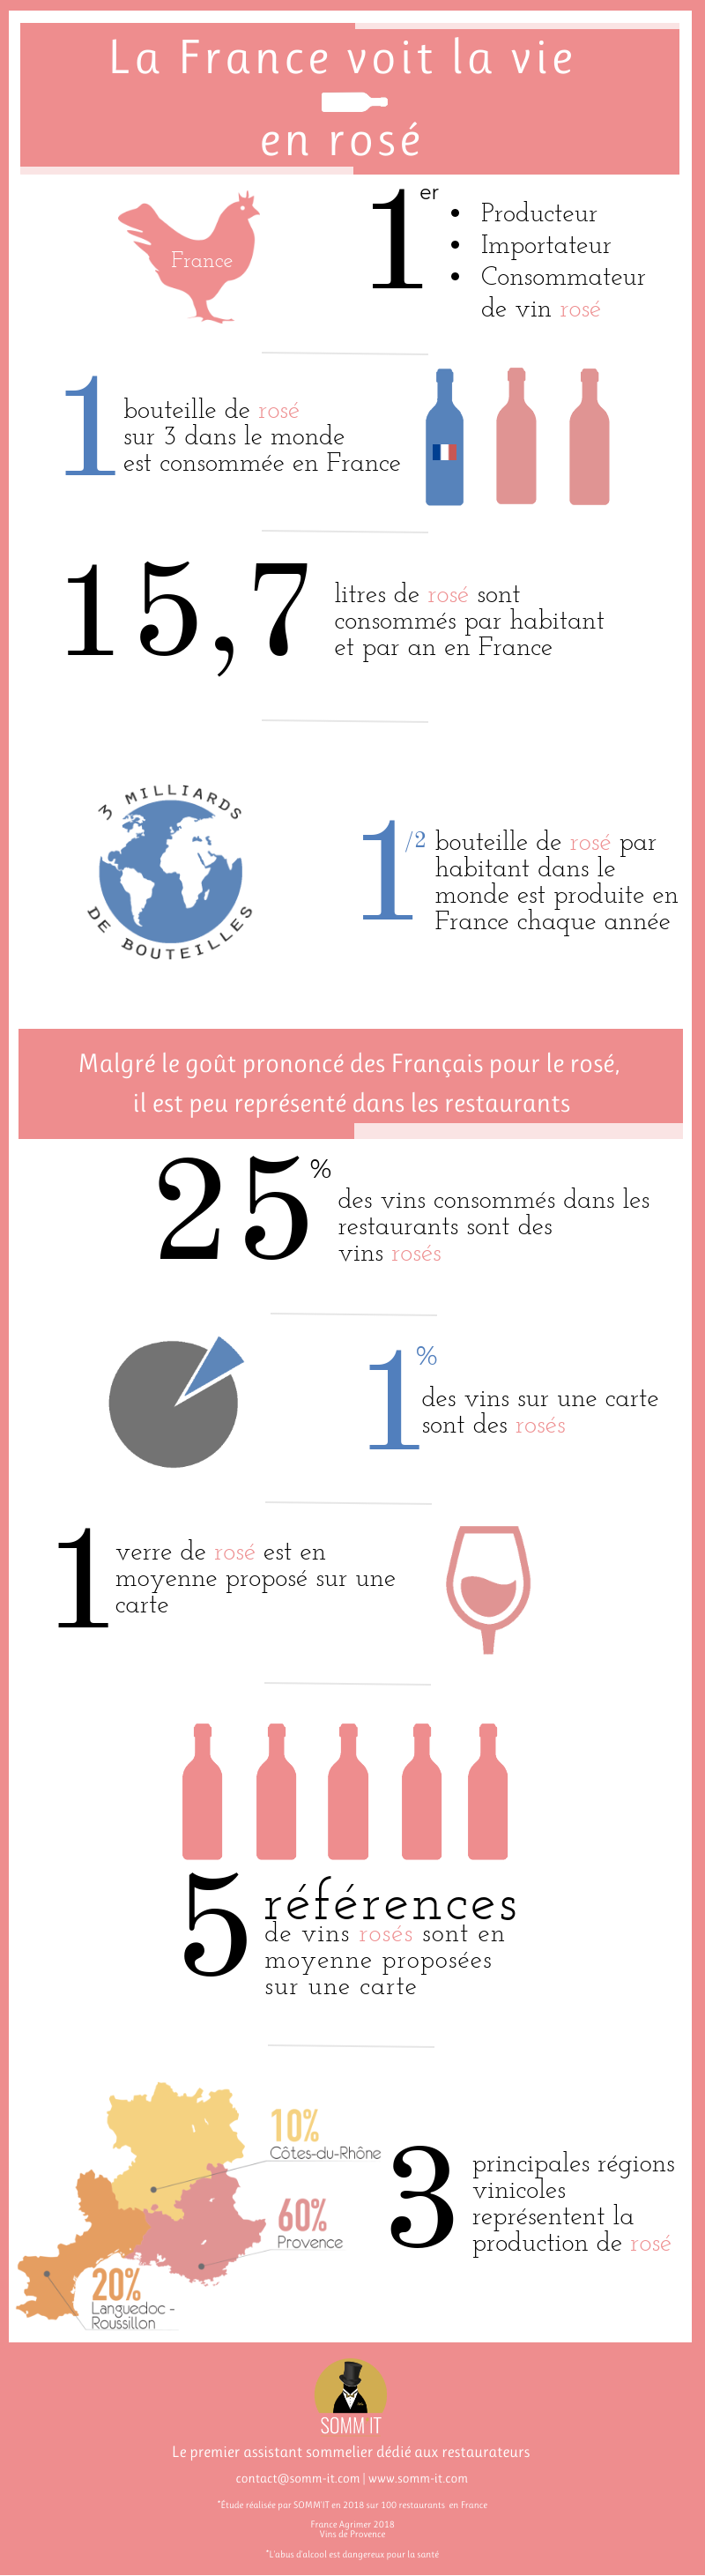 infographie la France et le rosé